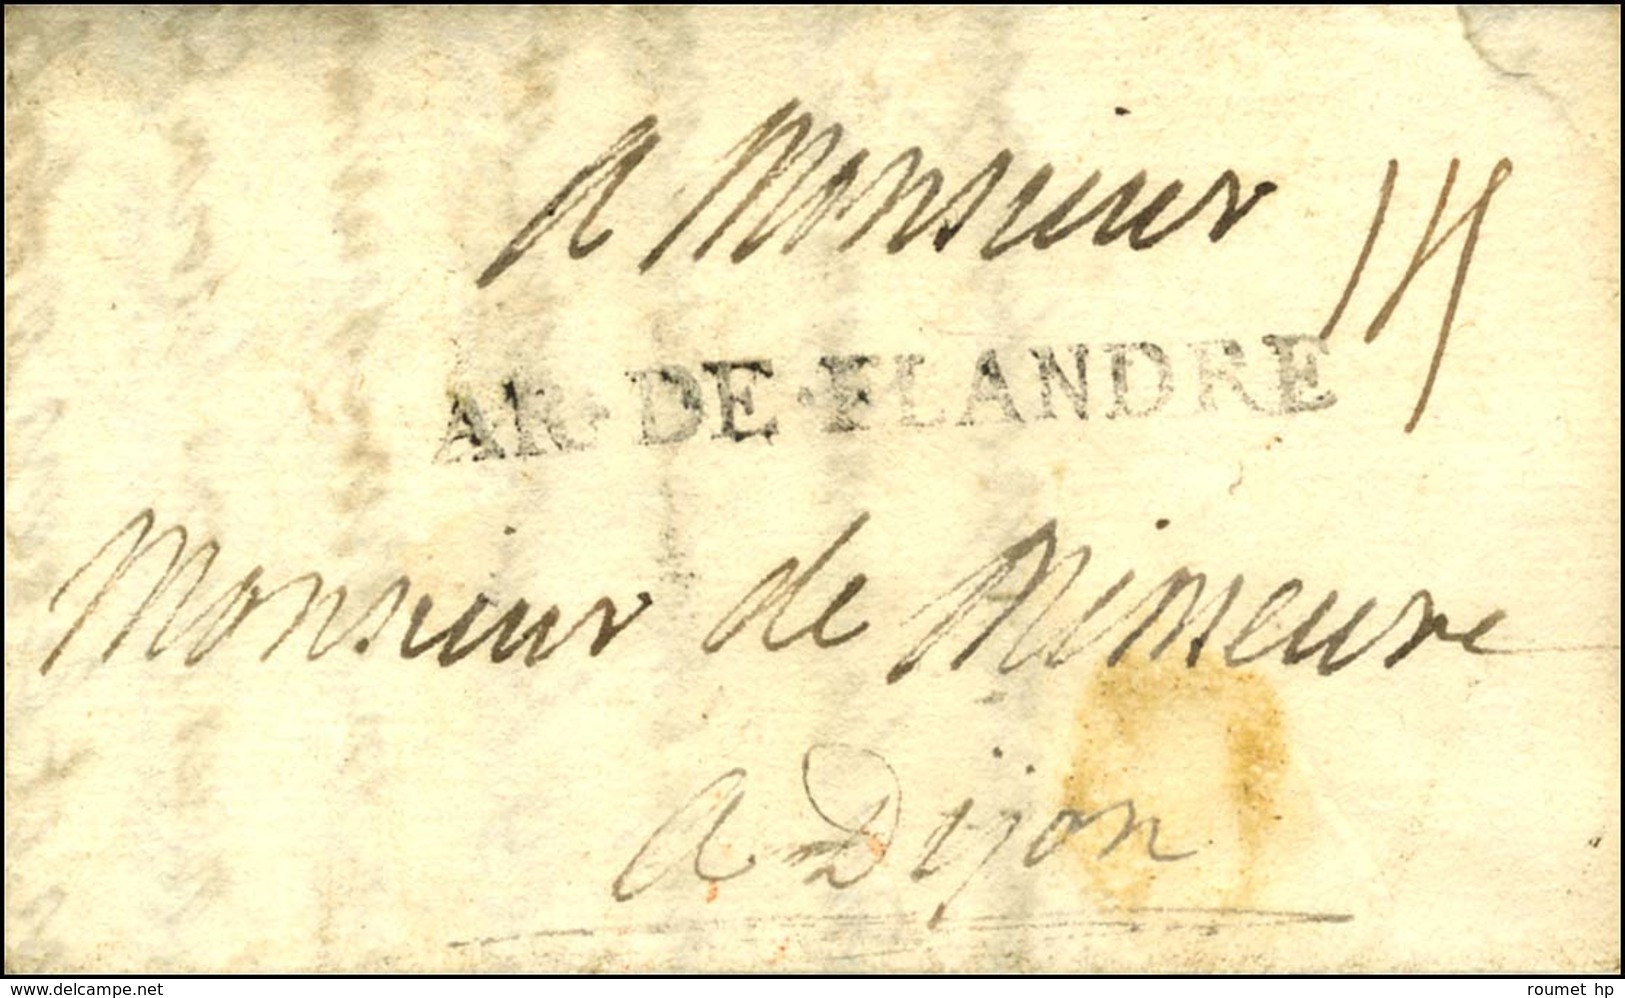 AR.DE.FLANDRE Sur Lettre Avec Texte Daté '' Au Camp De St Amand Le 21 Septembre 1706 ''. - TB / SUP. - R. - Army Postmarks (before 1900)